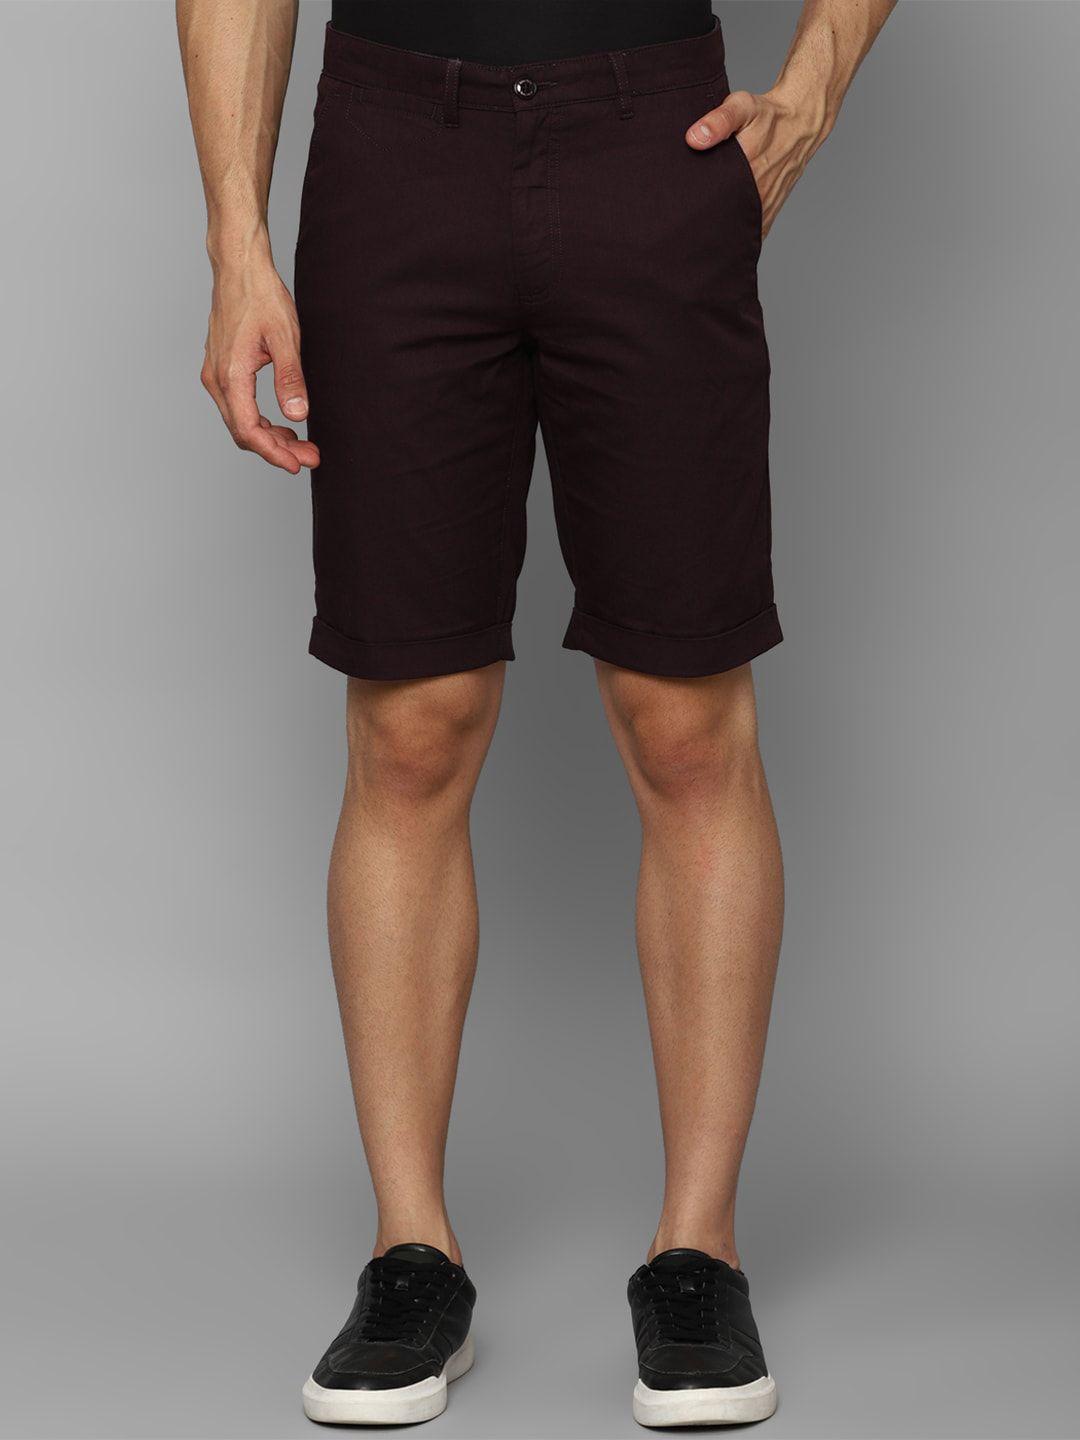 allen-solly-men-slim-fit-pure-cotton-shorts